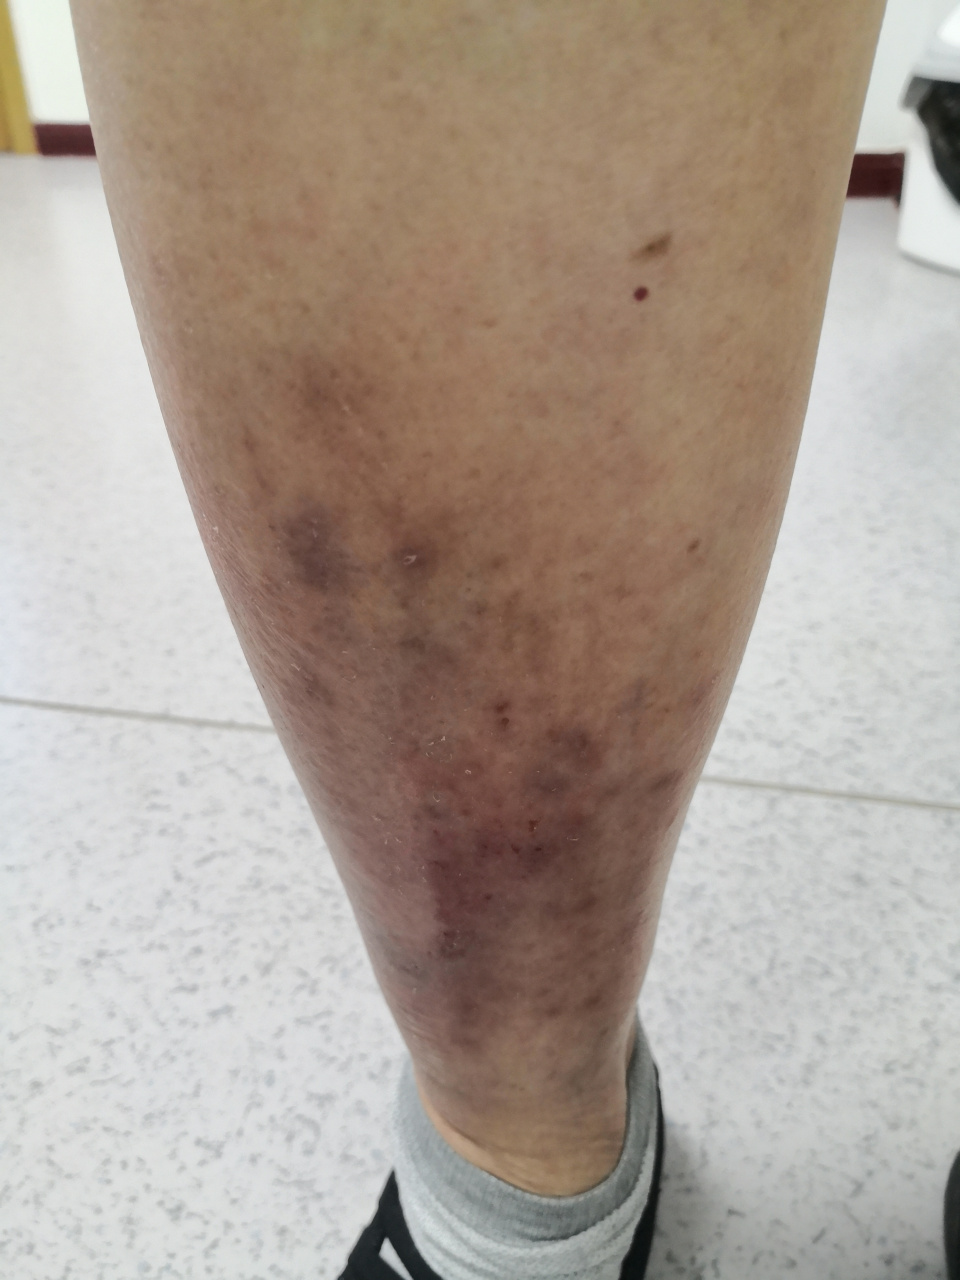 小腿湿疹症状,考虑下肢静脉曲张导致的淤积性皮炎